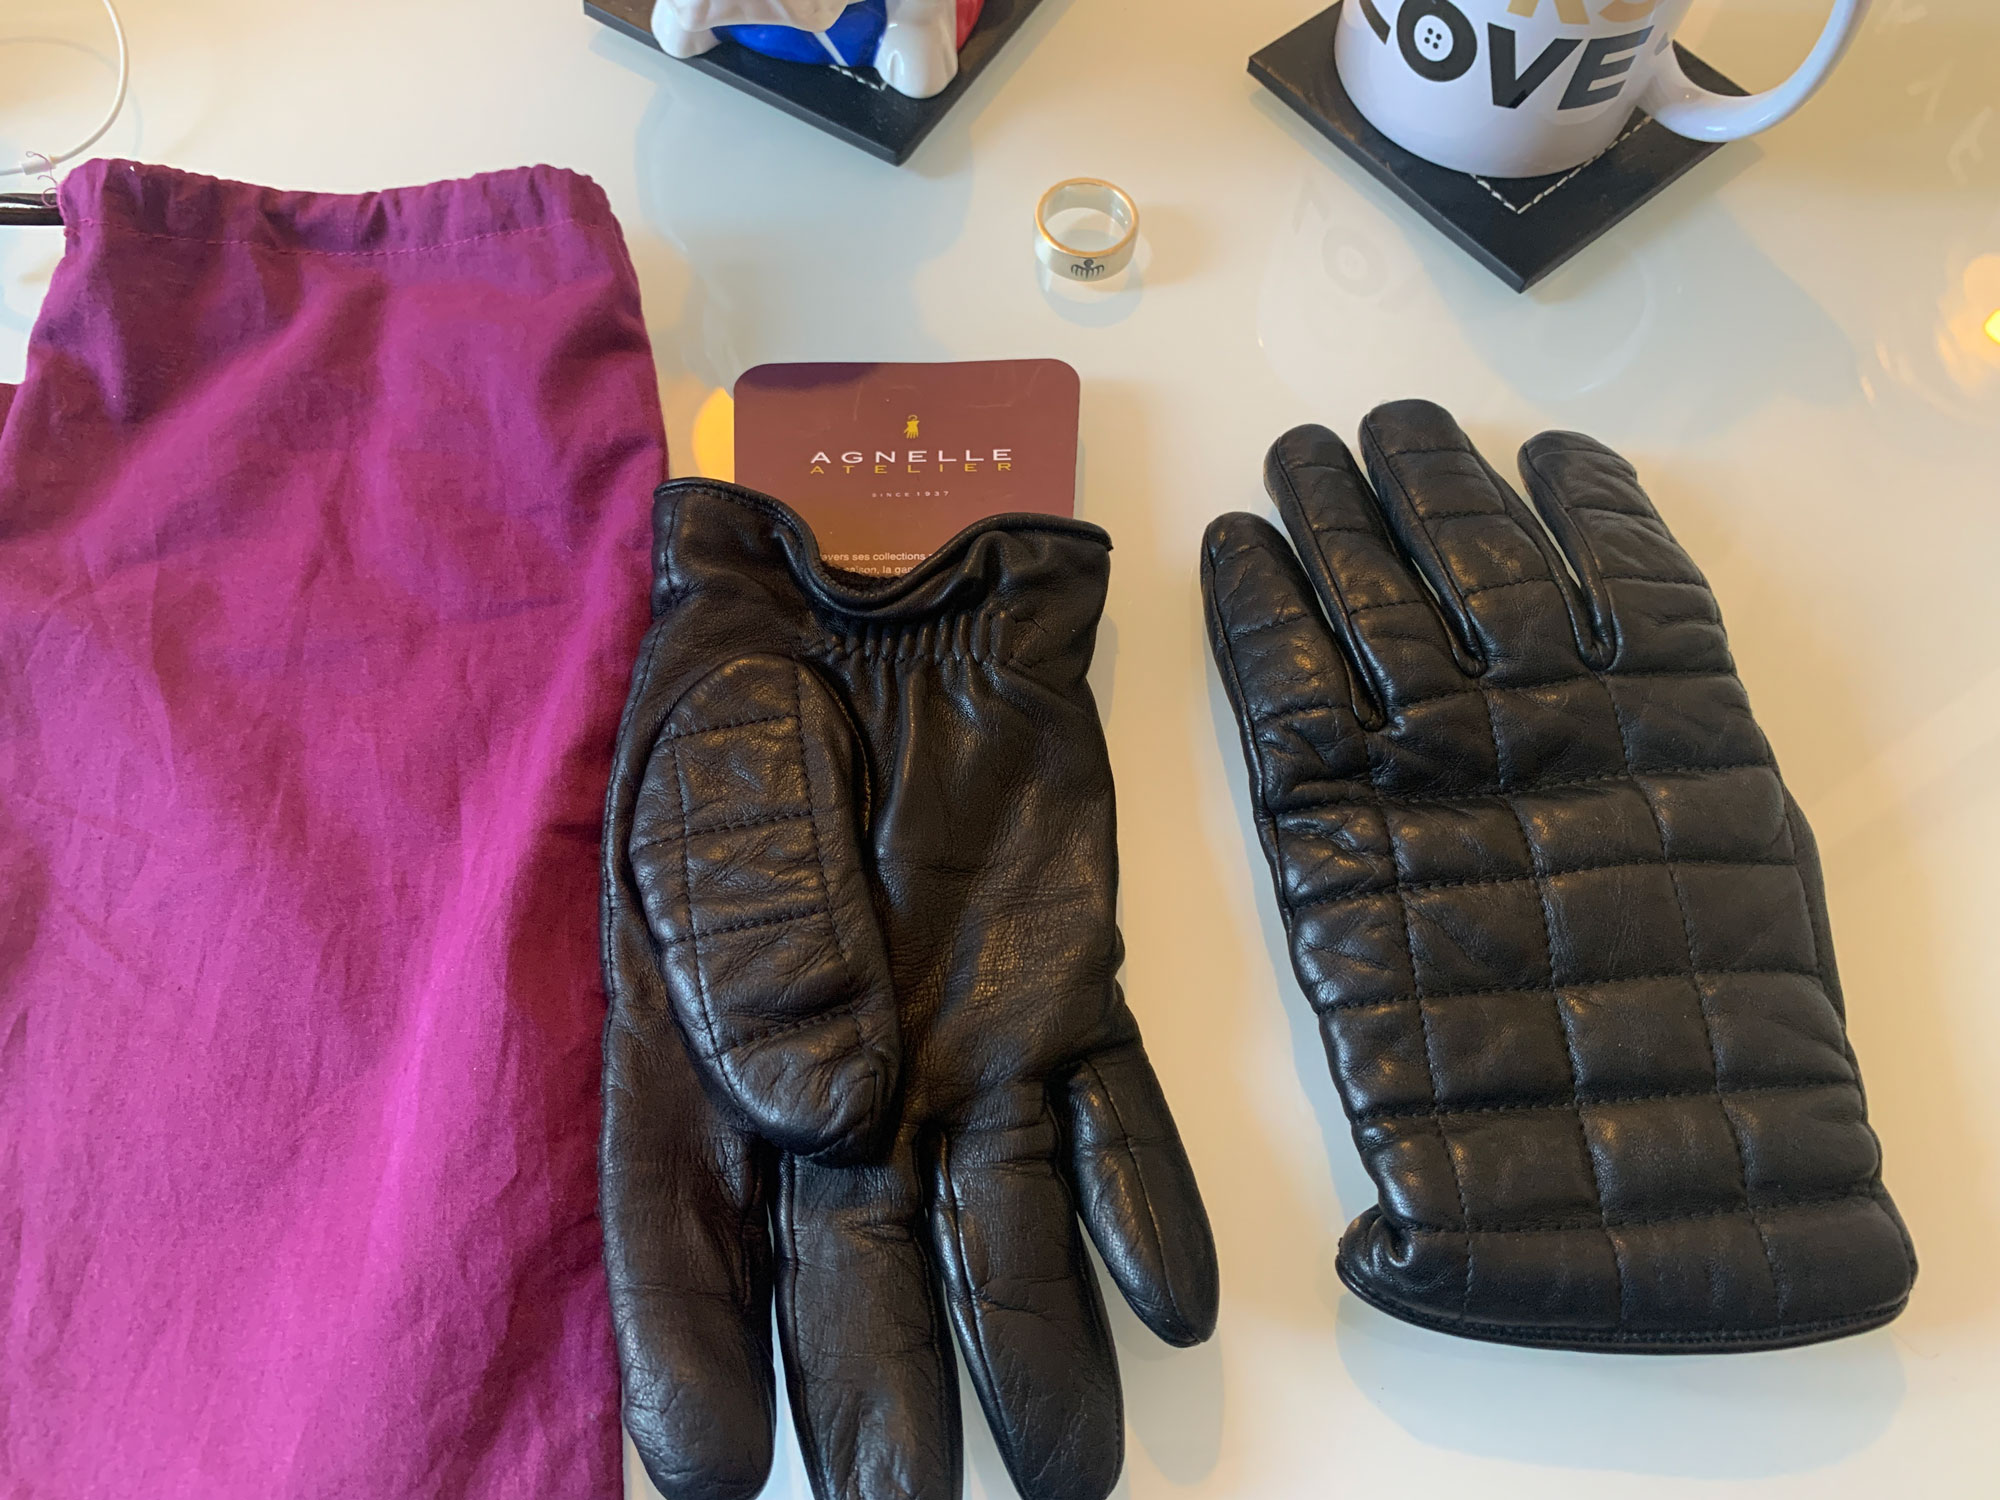 Agnelle gloves 